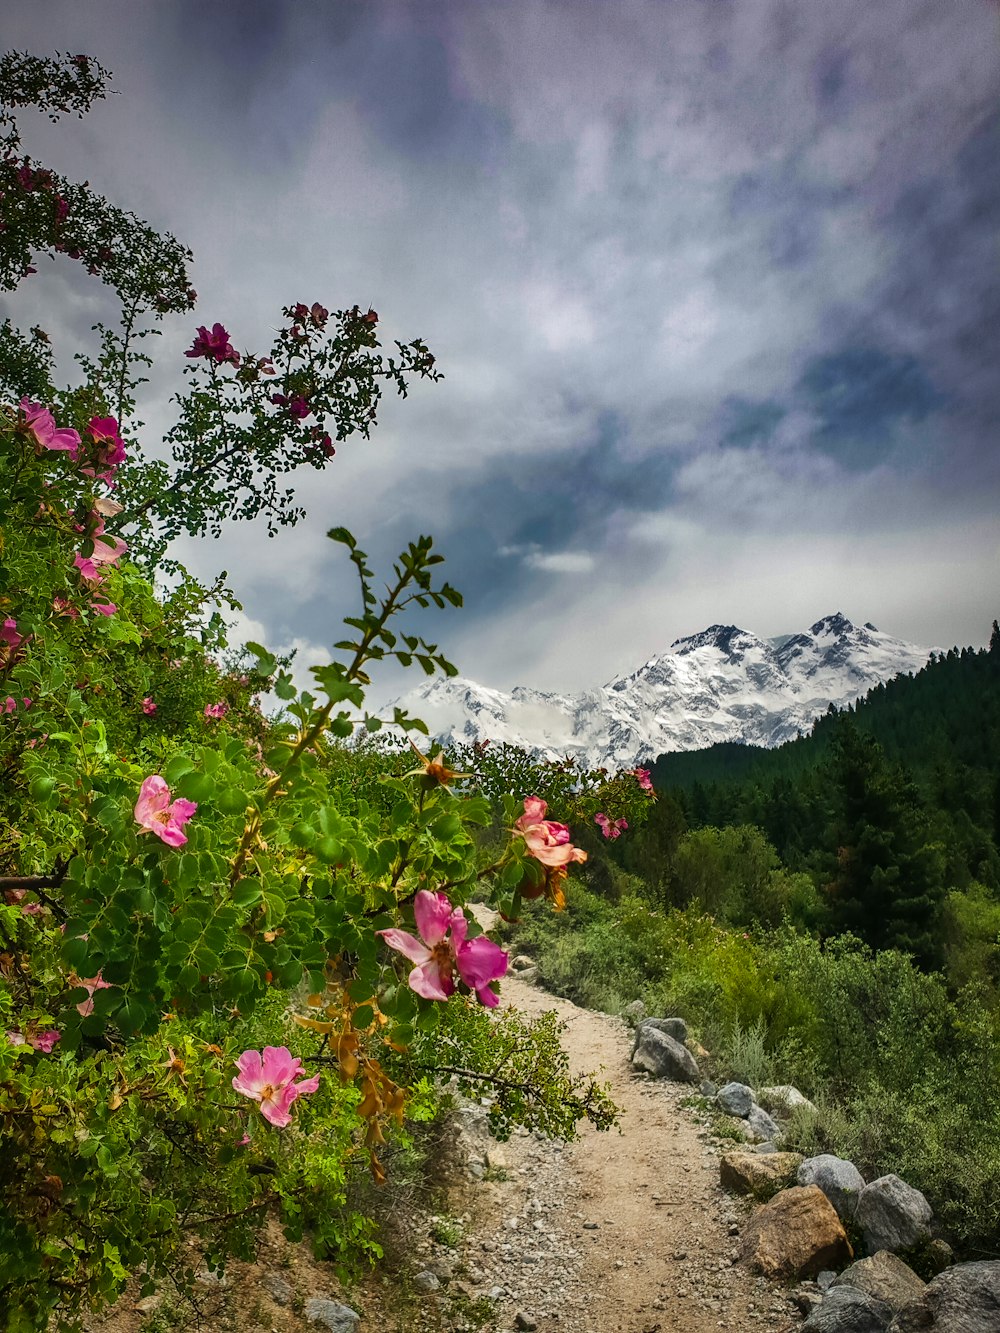 flores rosadas en la montaña rocosa bajo el cielo nublado durante el día